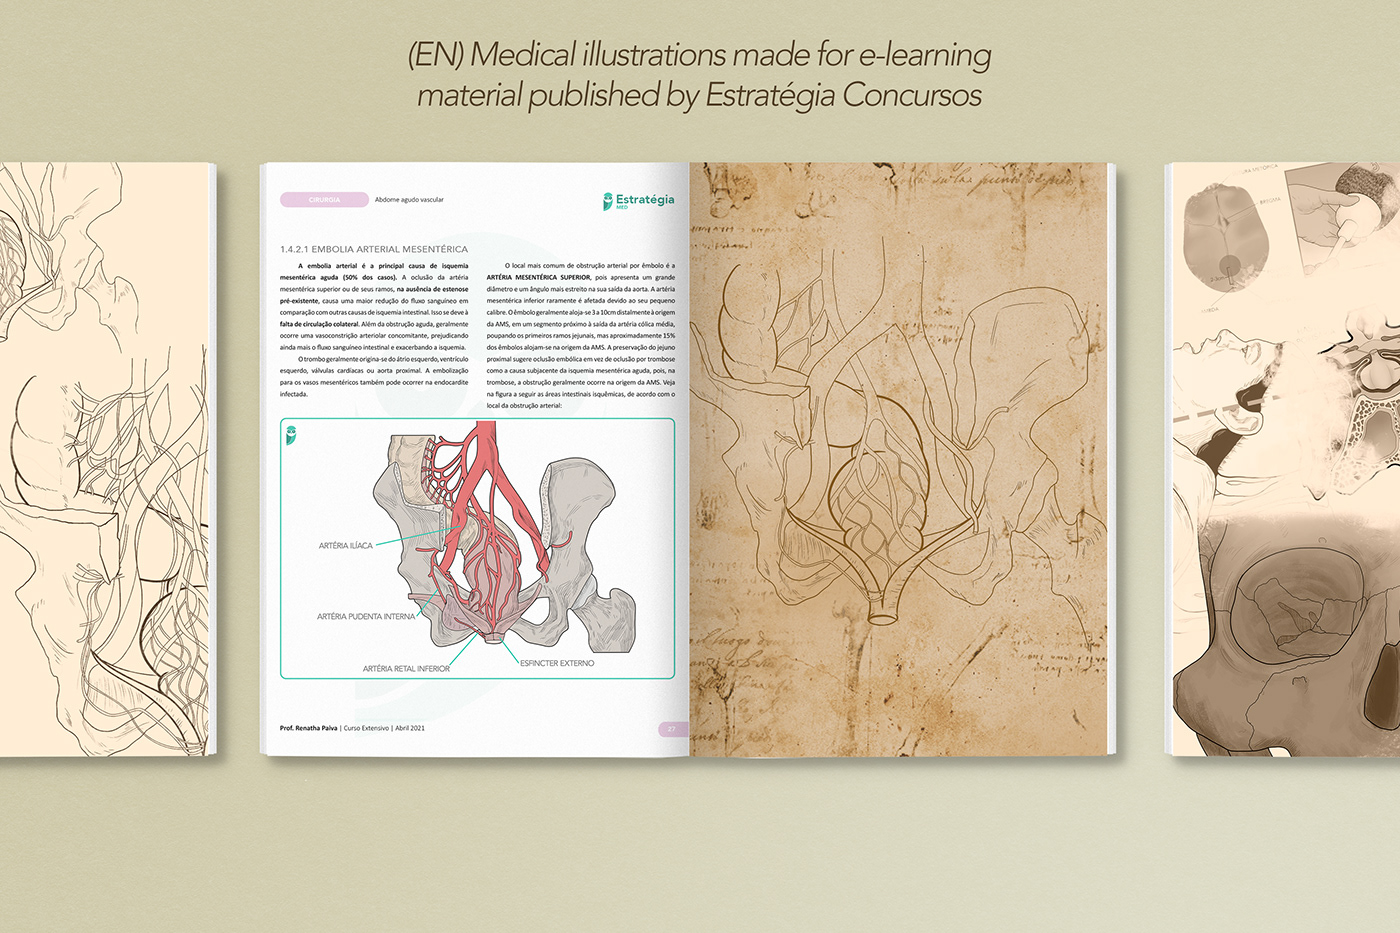 cartoon cartoon character Digital Art  medical medical illustration ilustração médica diagramação ebook didático didático medicina